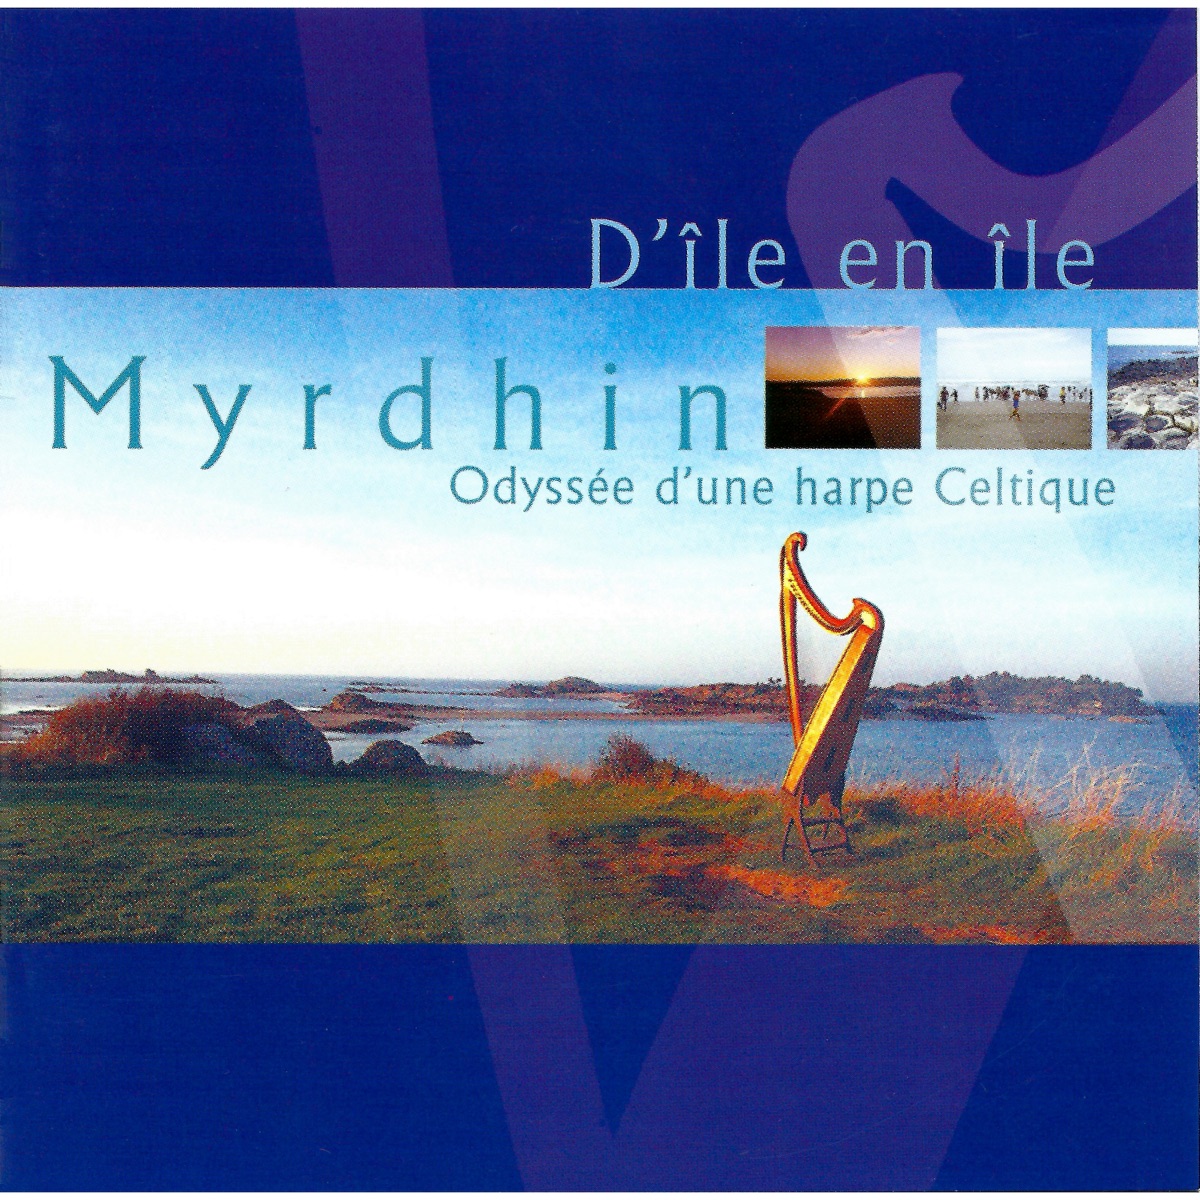 D'île en île, odyssée d'une harpe celtique – Album par Myrdhin – Apple Music